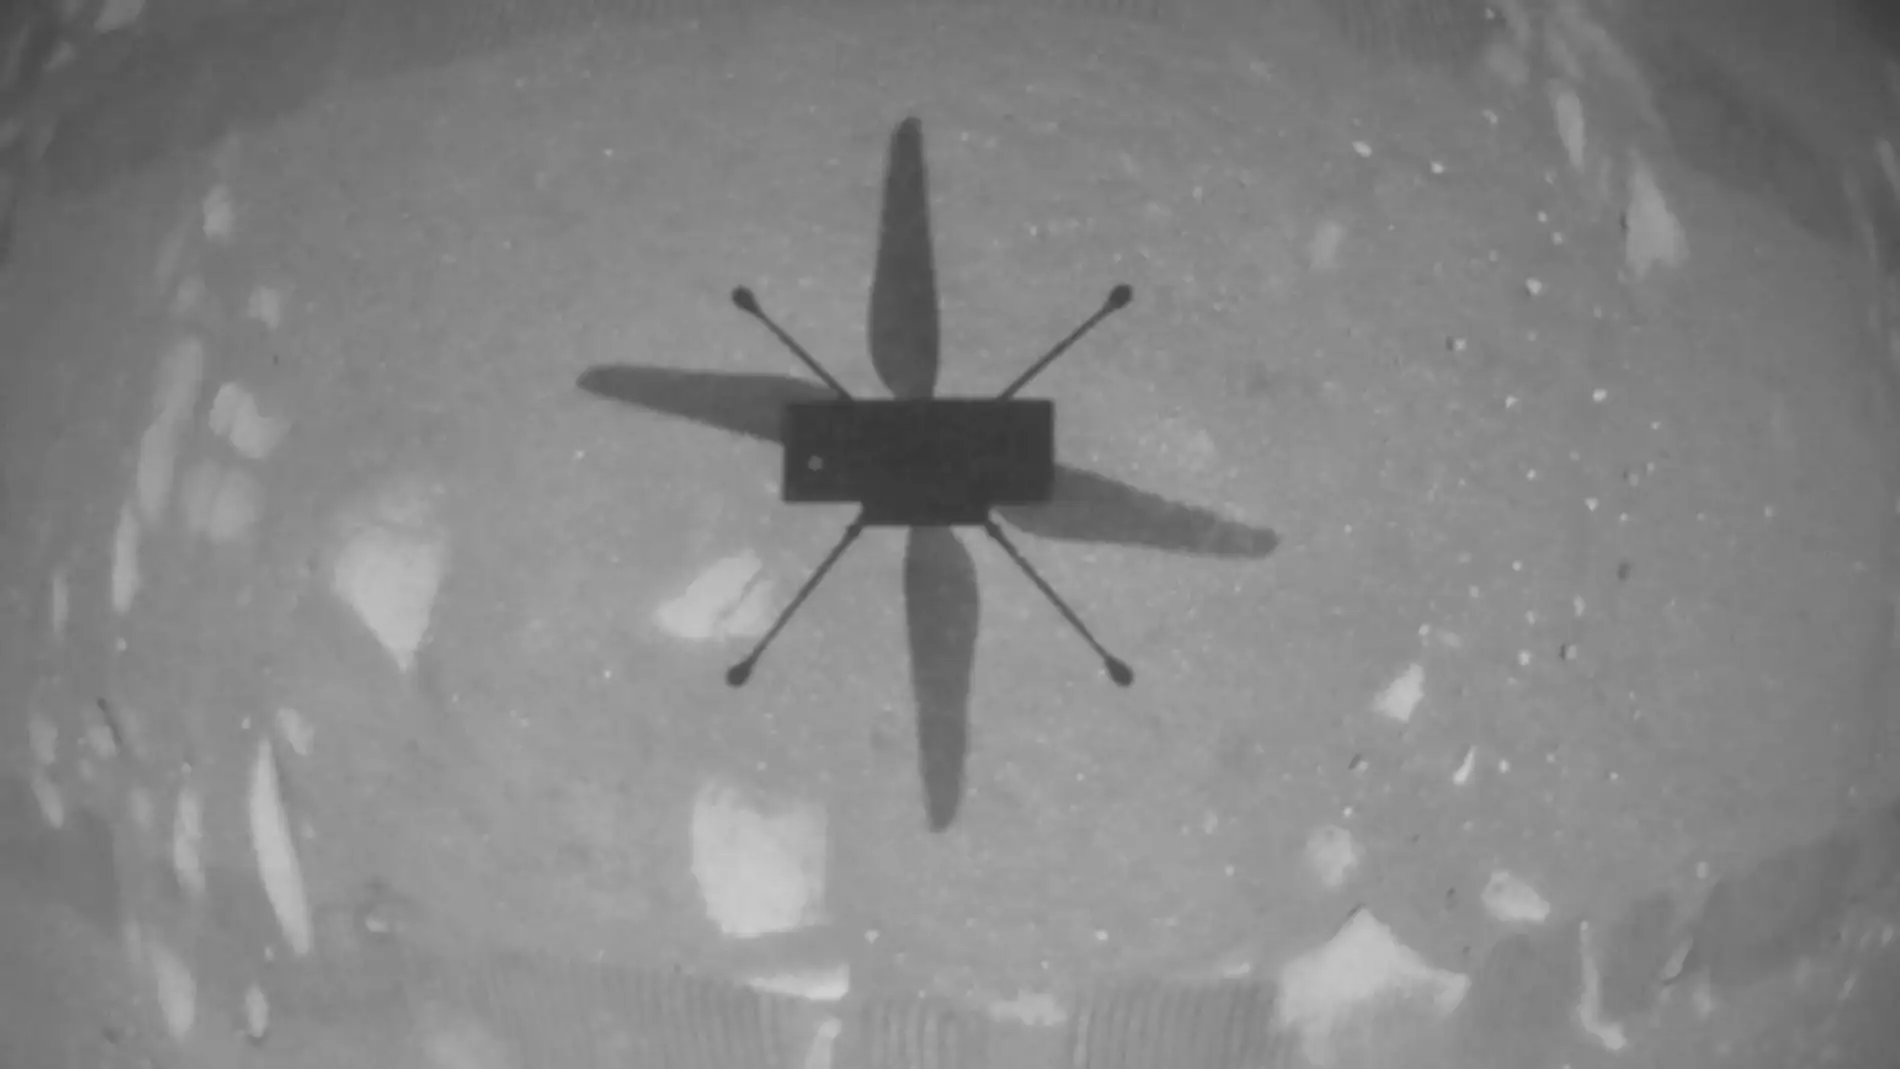 Sombra del Ingenuity, vista desde el propio helicóptero durante el vuelo